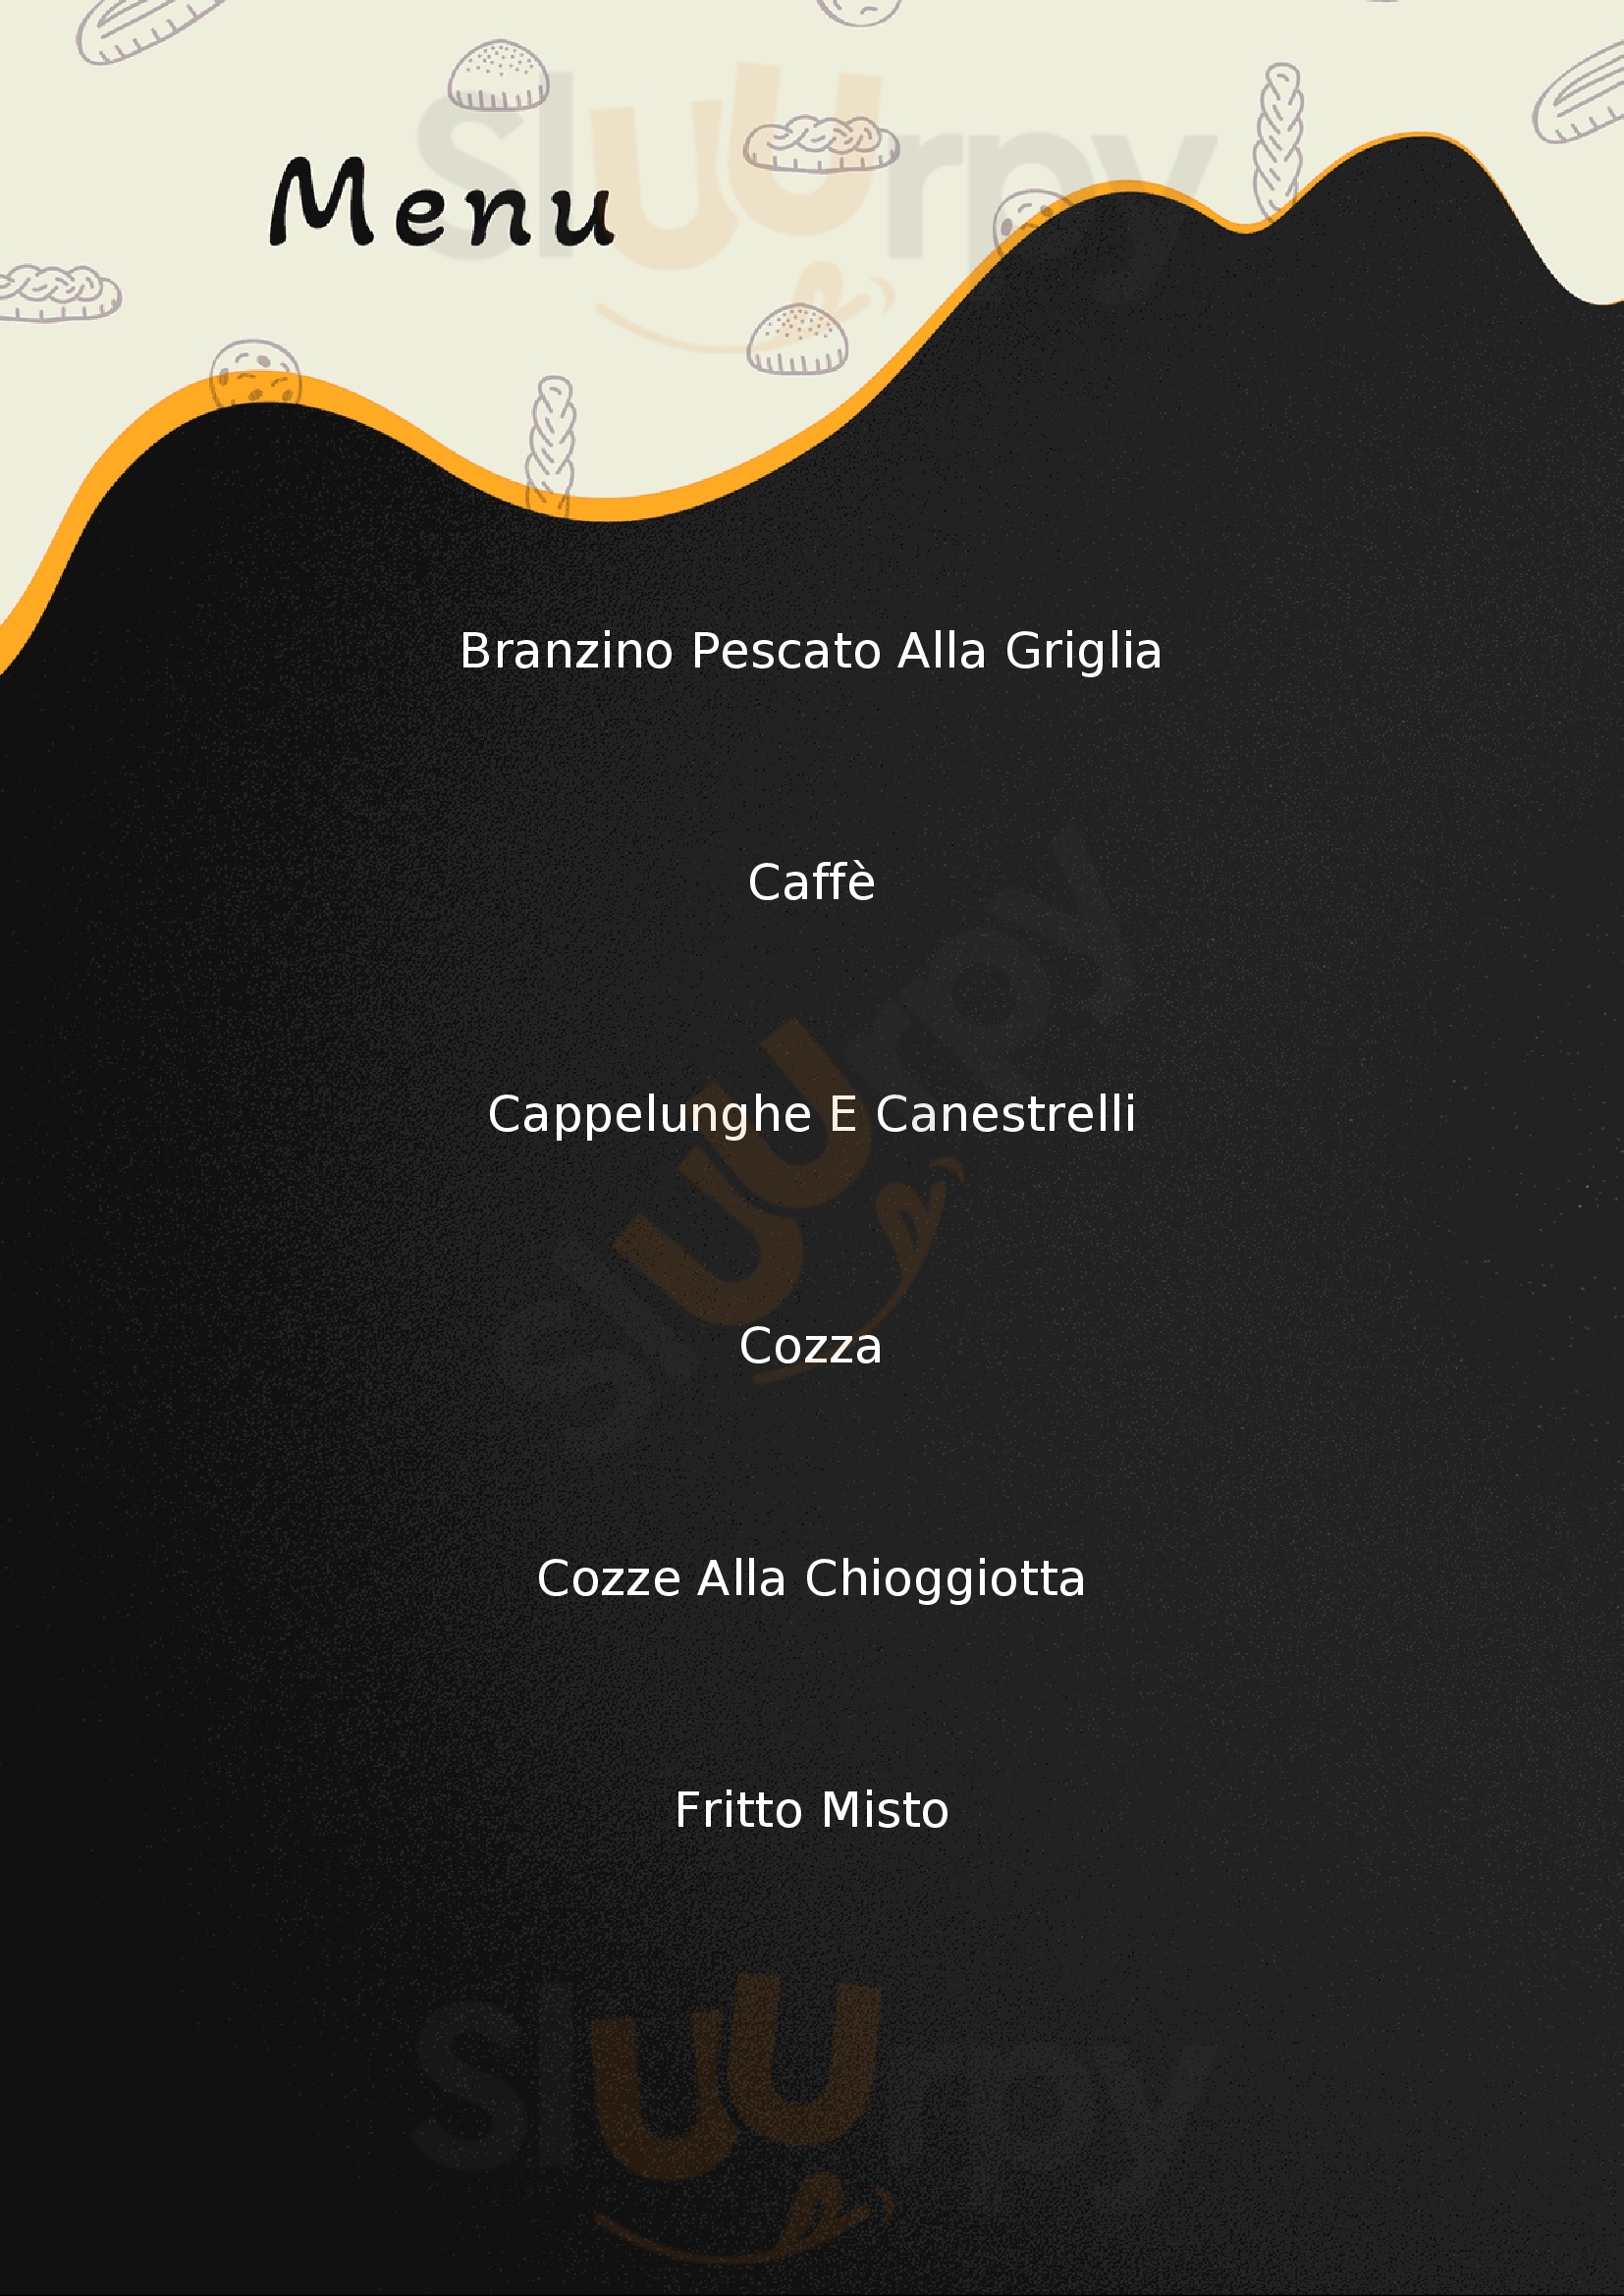 Plus Ristorante Pizzeria Chioggia menù 1 pagina